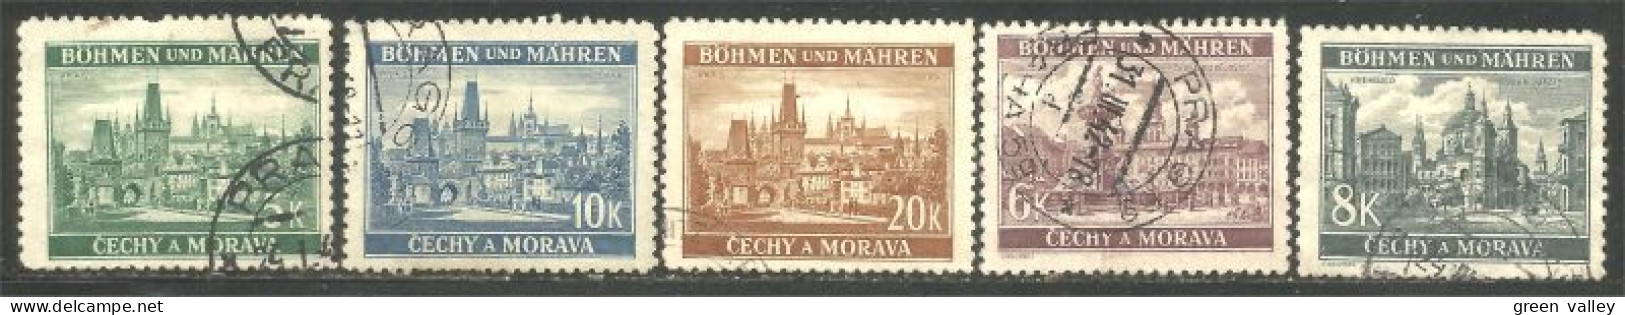 290 Bohmen Mahren Monuments 1939-40 (CZE-403) - Gebruikt